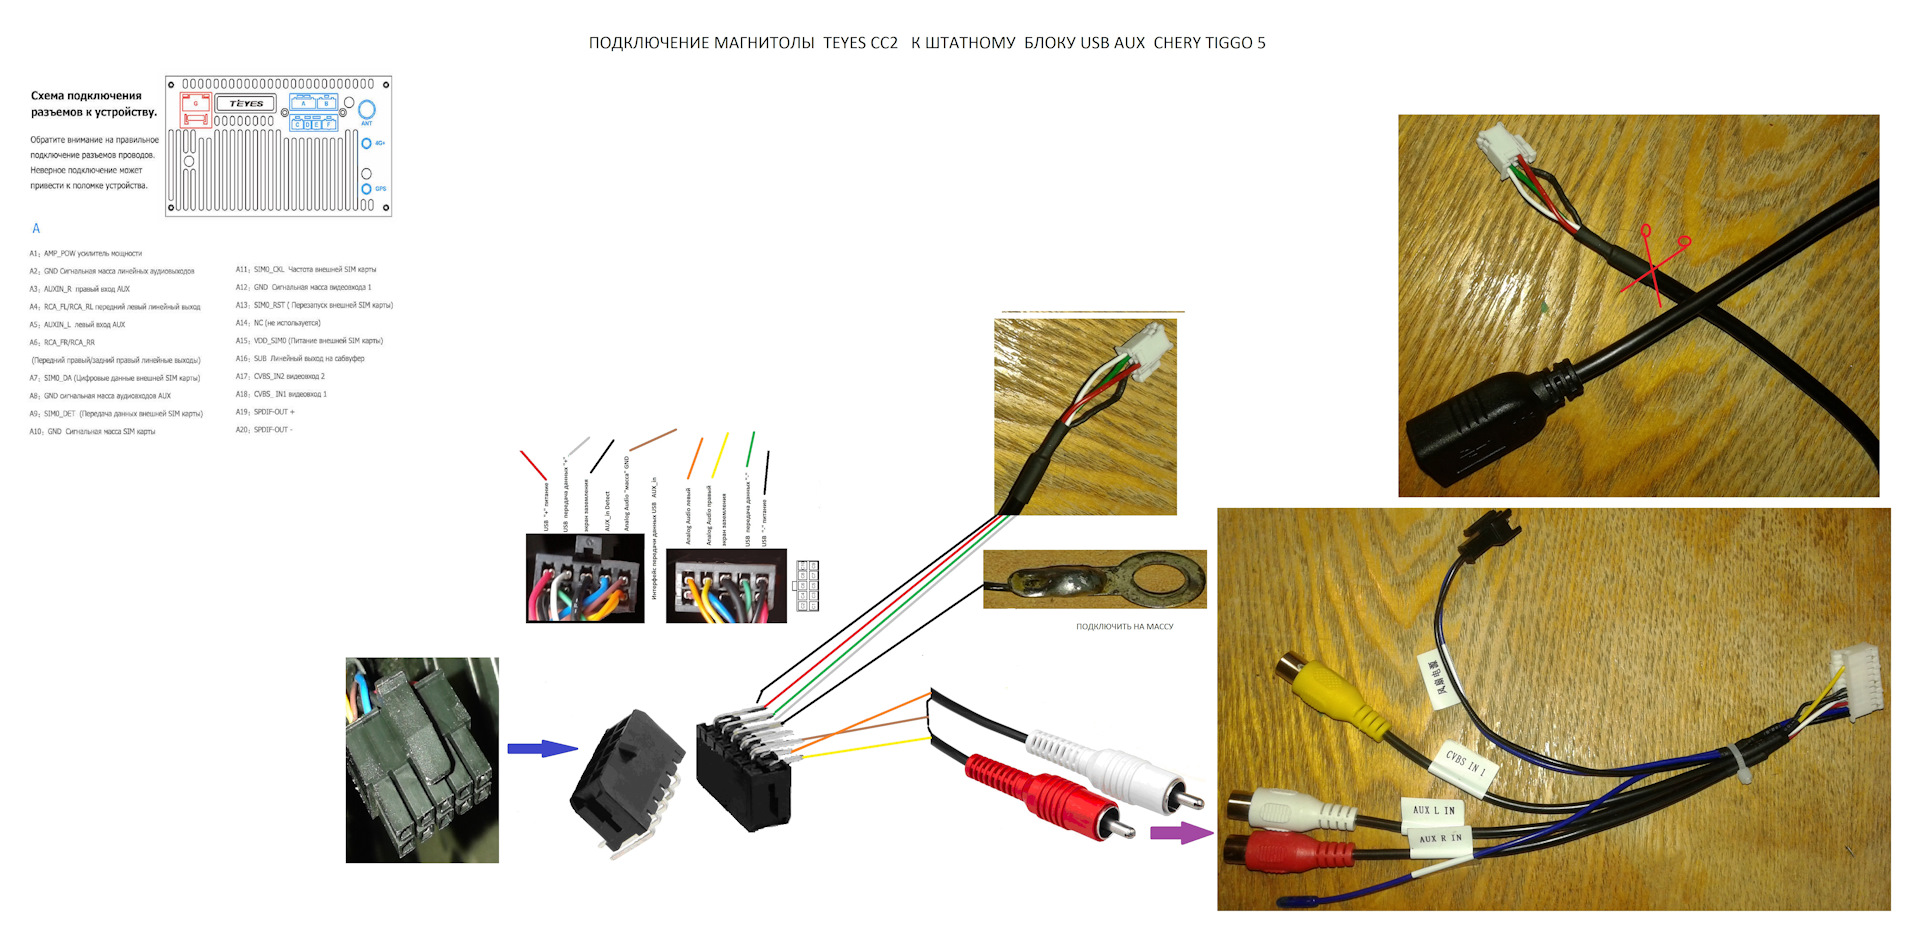 Распиновка магнитолы teyes. Схема подключения магнитолы Teyes сс3. RCA кабель для магнитолы Teyes cc3. Кабель для подключения штатного разъема USB С Teyes cc3. Chery Tiggo 4 разъемы для USB.